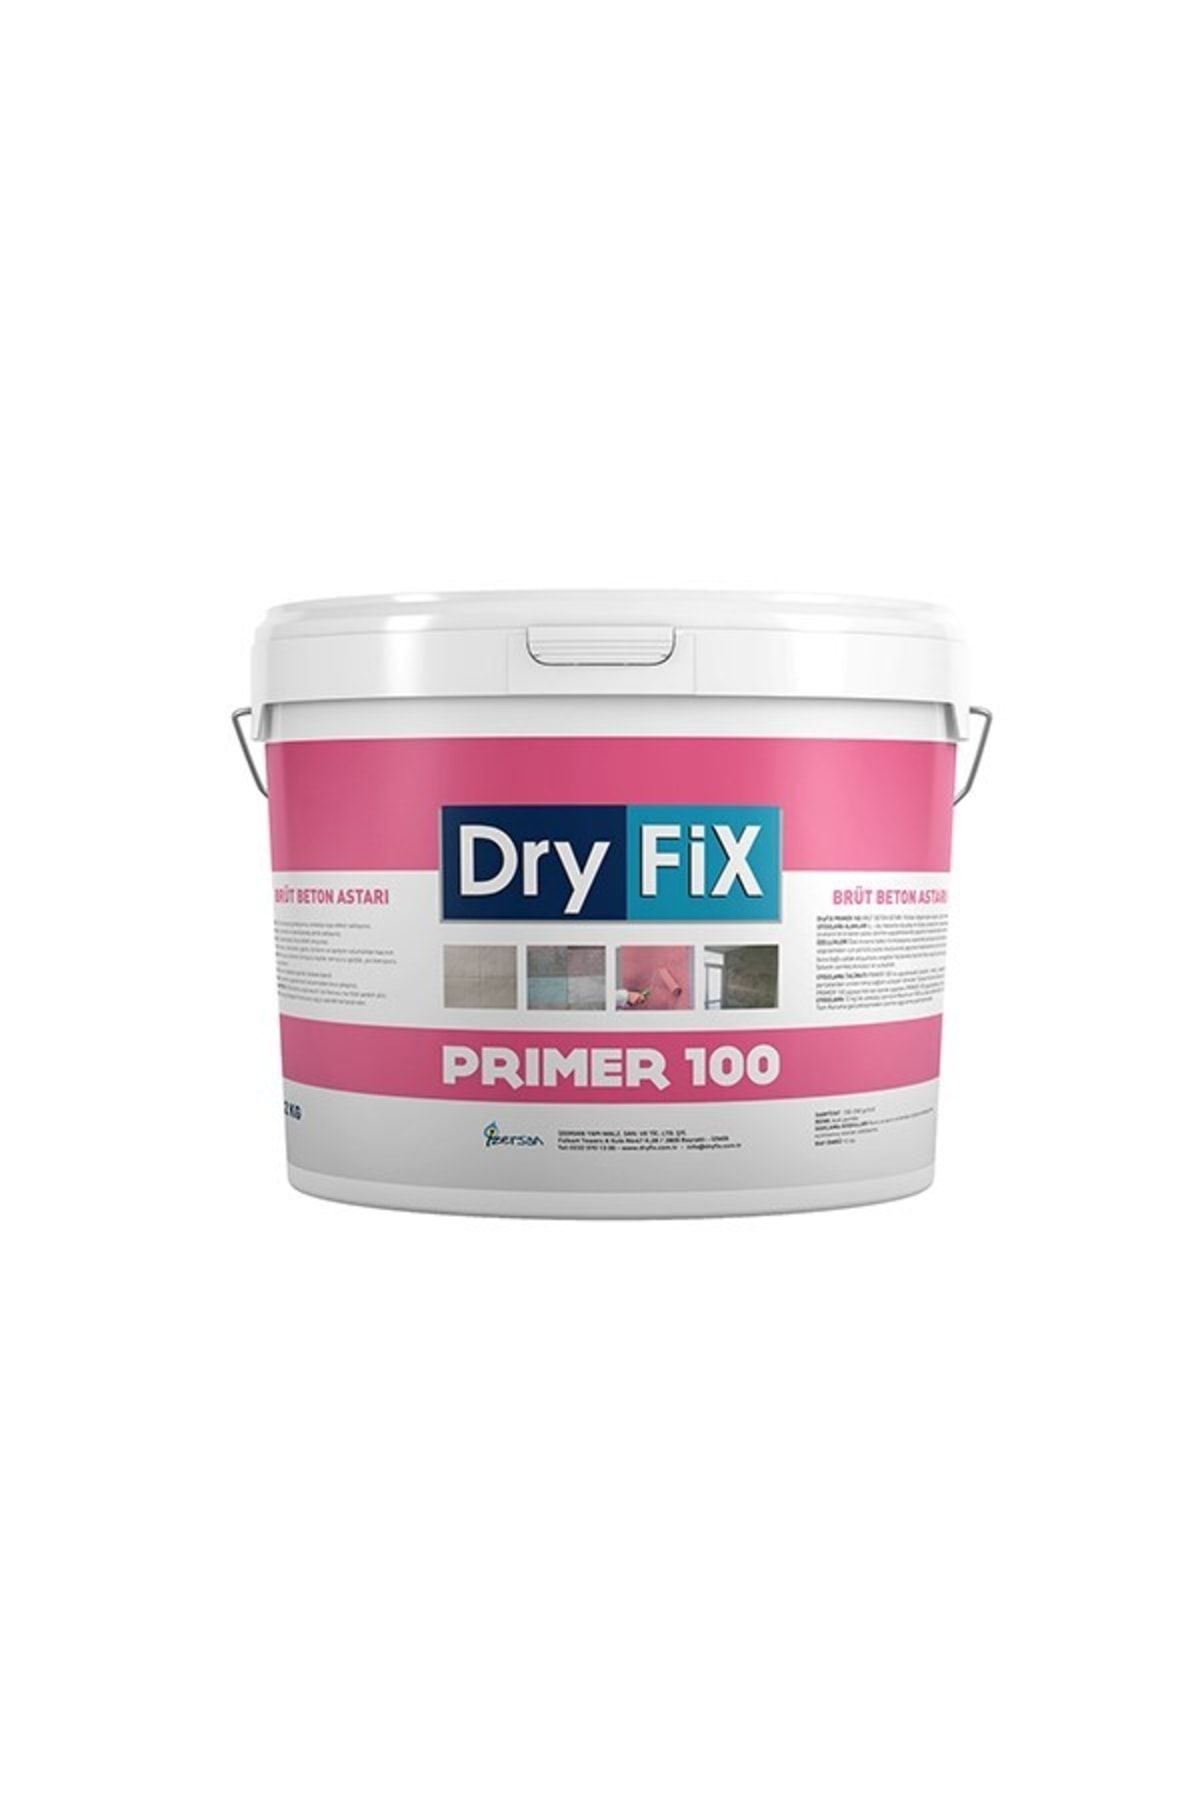 Dryfix Primer 100 Brüt Beton Astarı 12 Kg Özel Mineral Katkılıdır